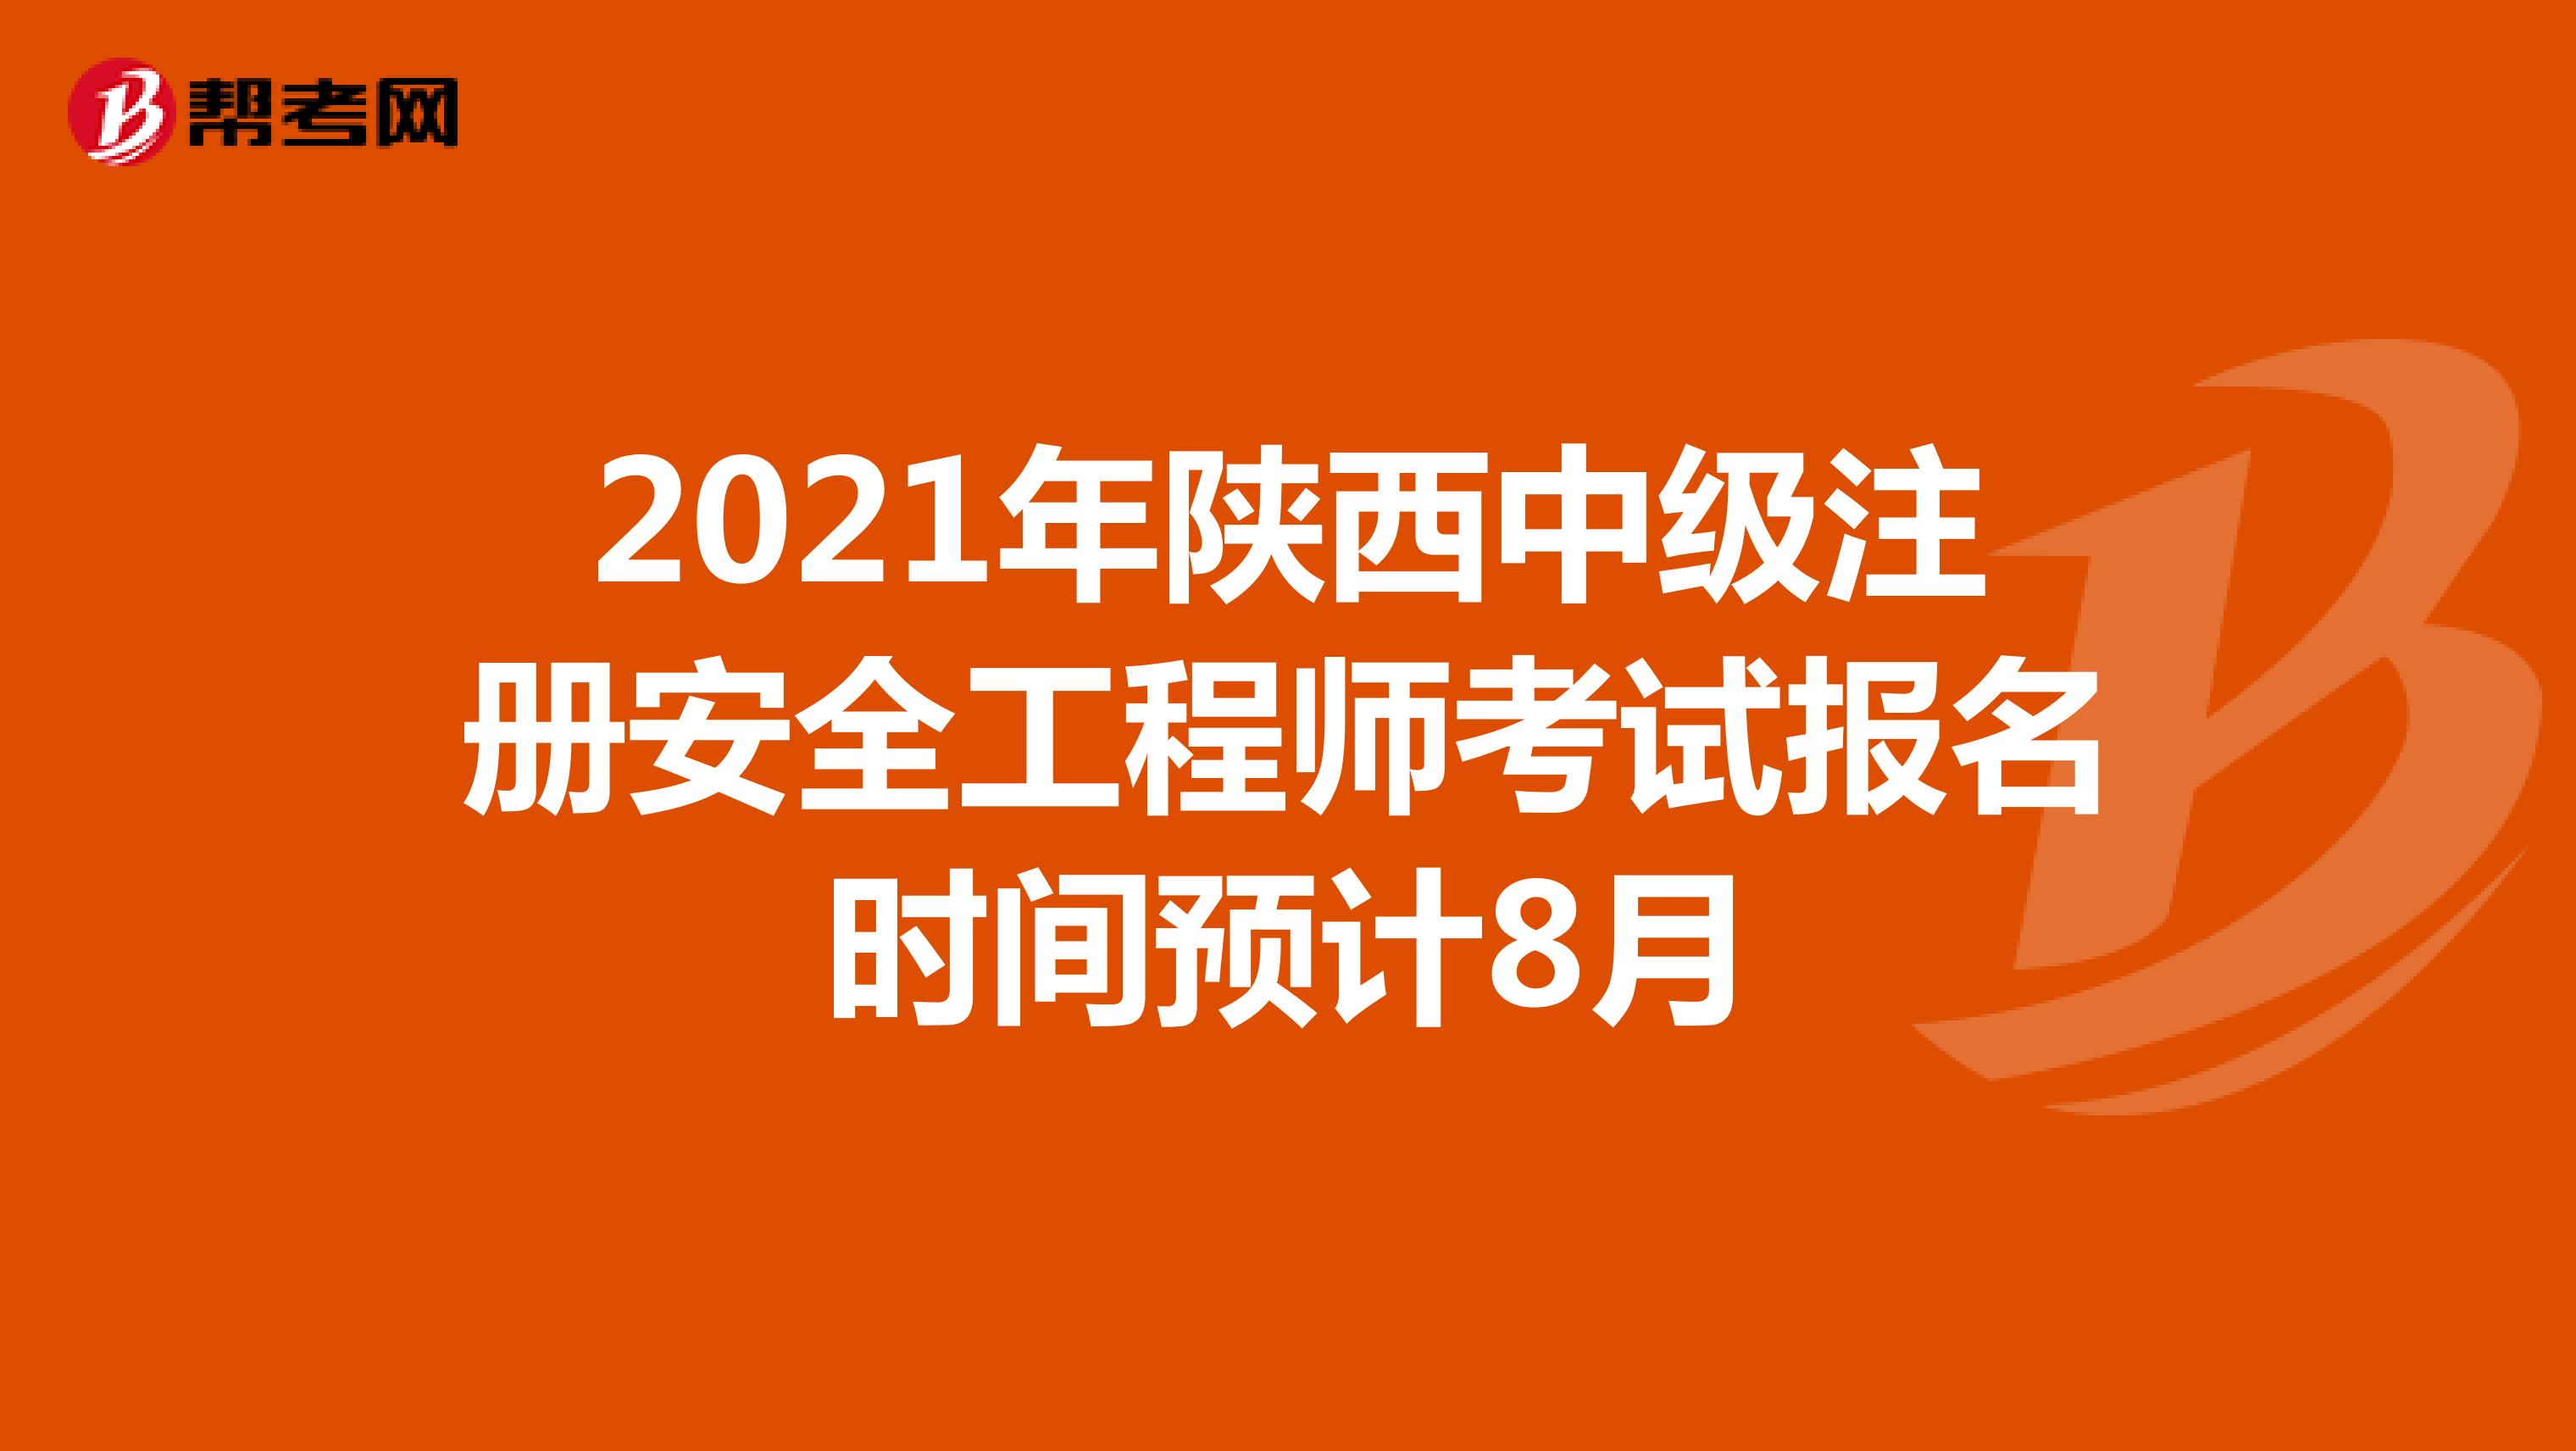 2021年陕西中级注册安全工程师考试报名时间预计8月